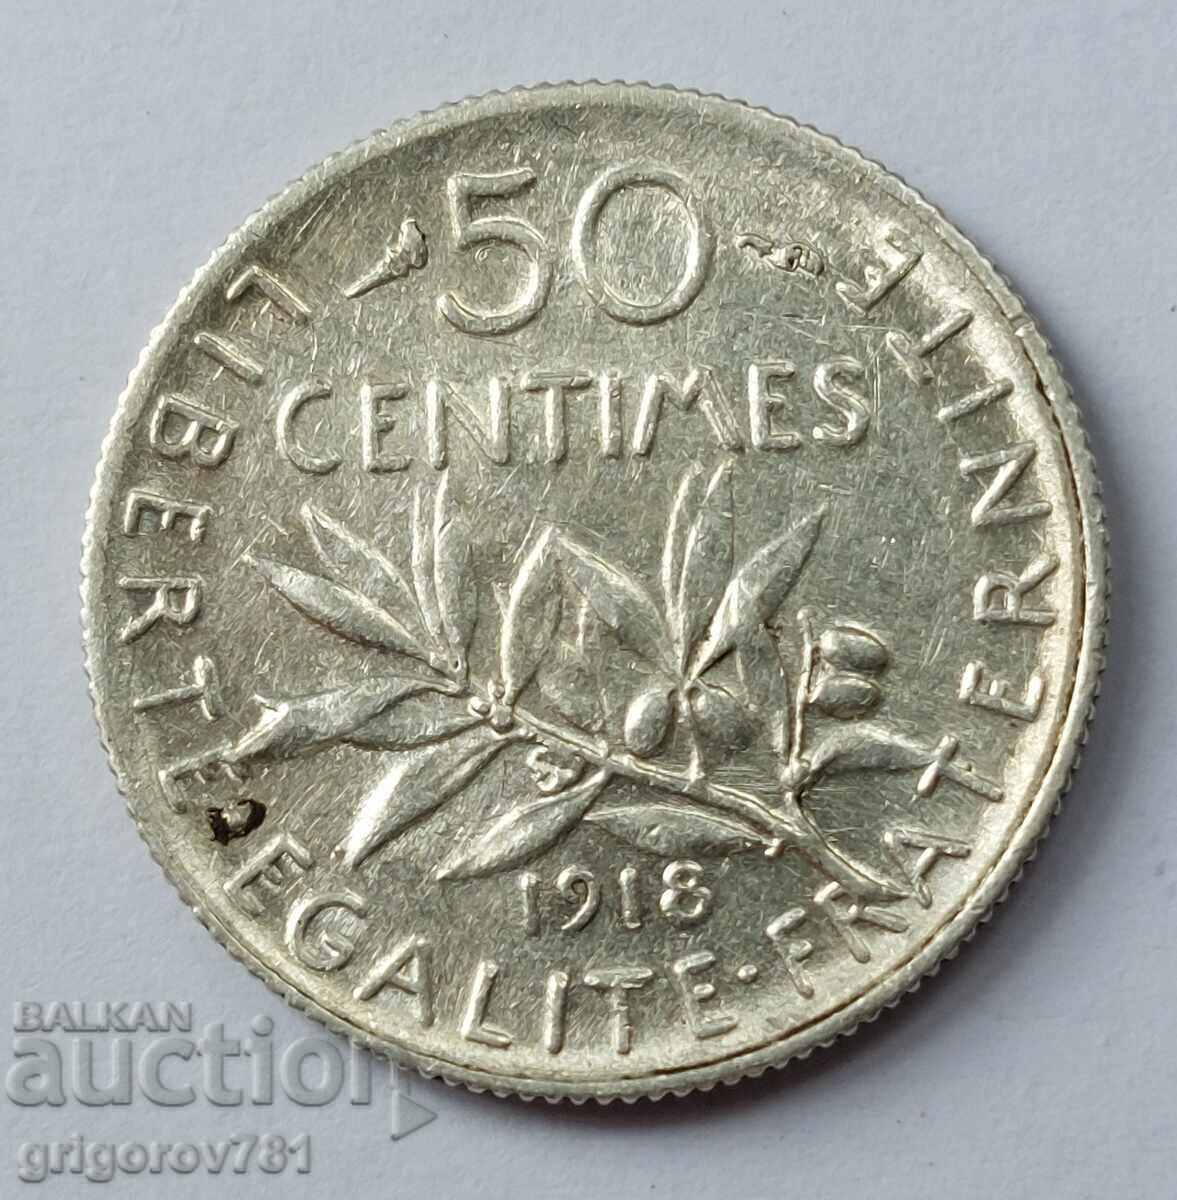 Ασημένιο 50 εκατοστά Γαλλία 1918 - ασημένιο νόμισμα №68